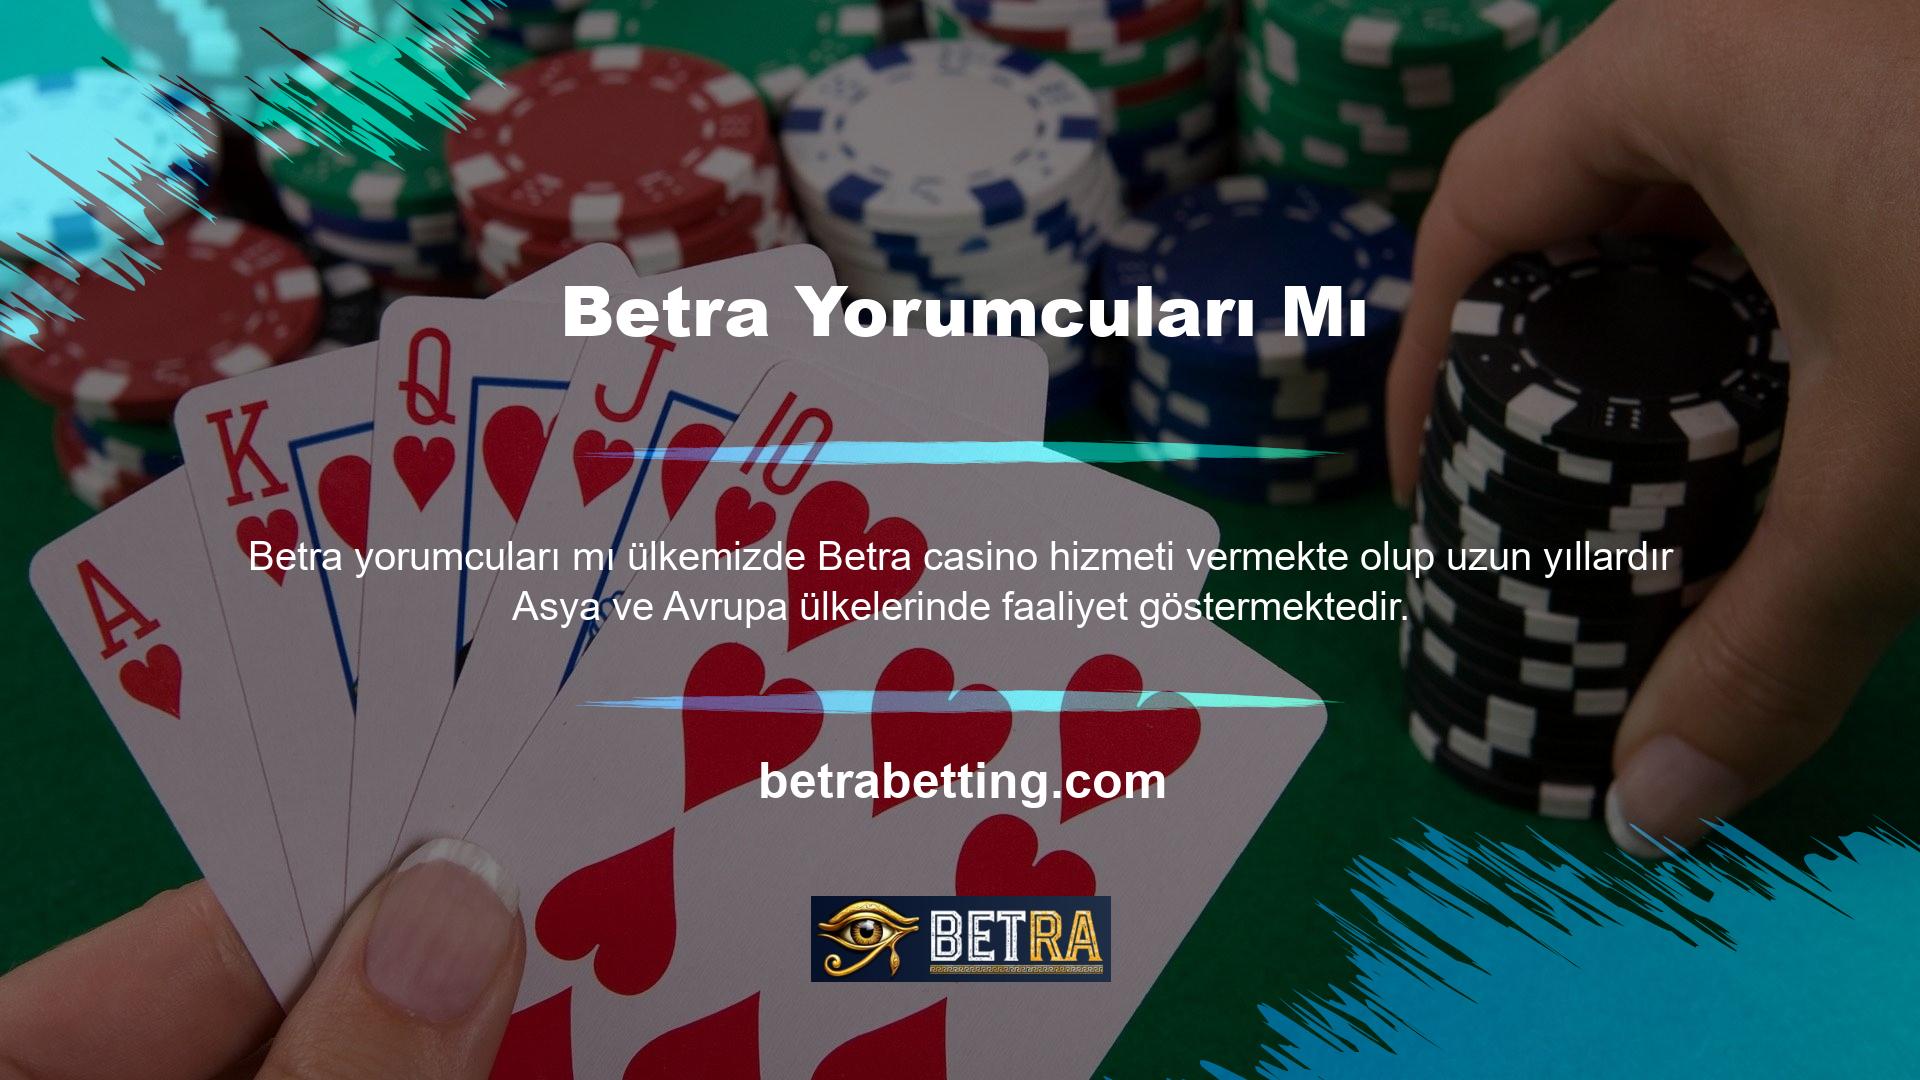 Ülkemizde casinonun yasak olması nedeniyle şans oyunları oynamak için Türk sitelerinden yararlanılmaktadır